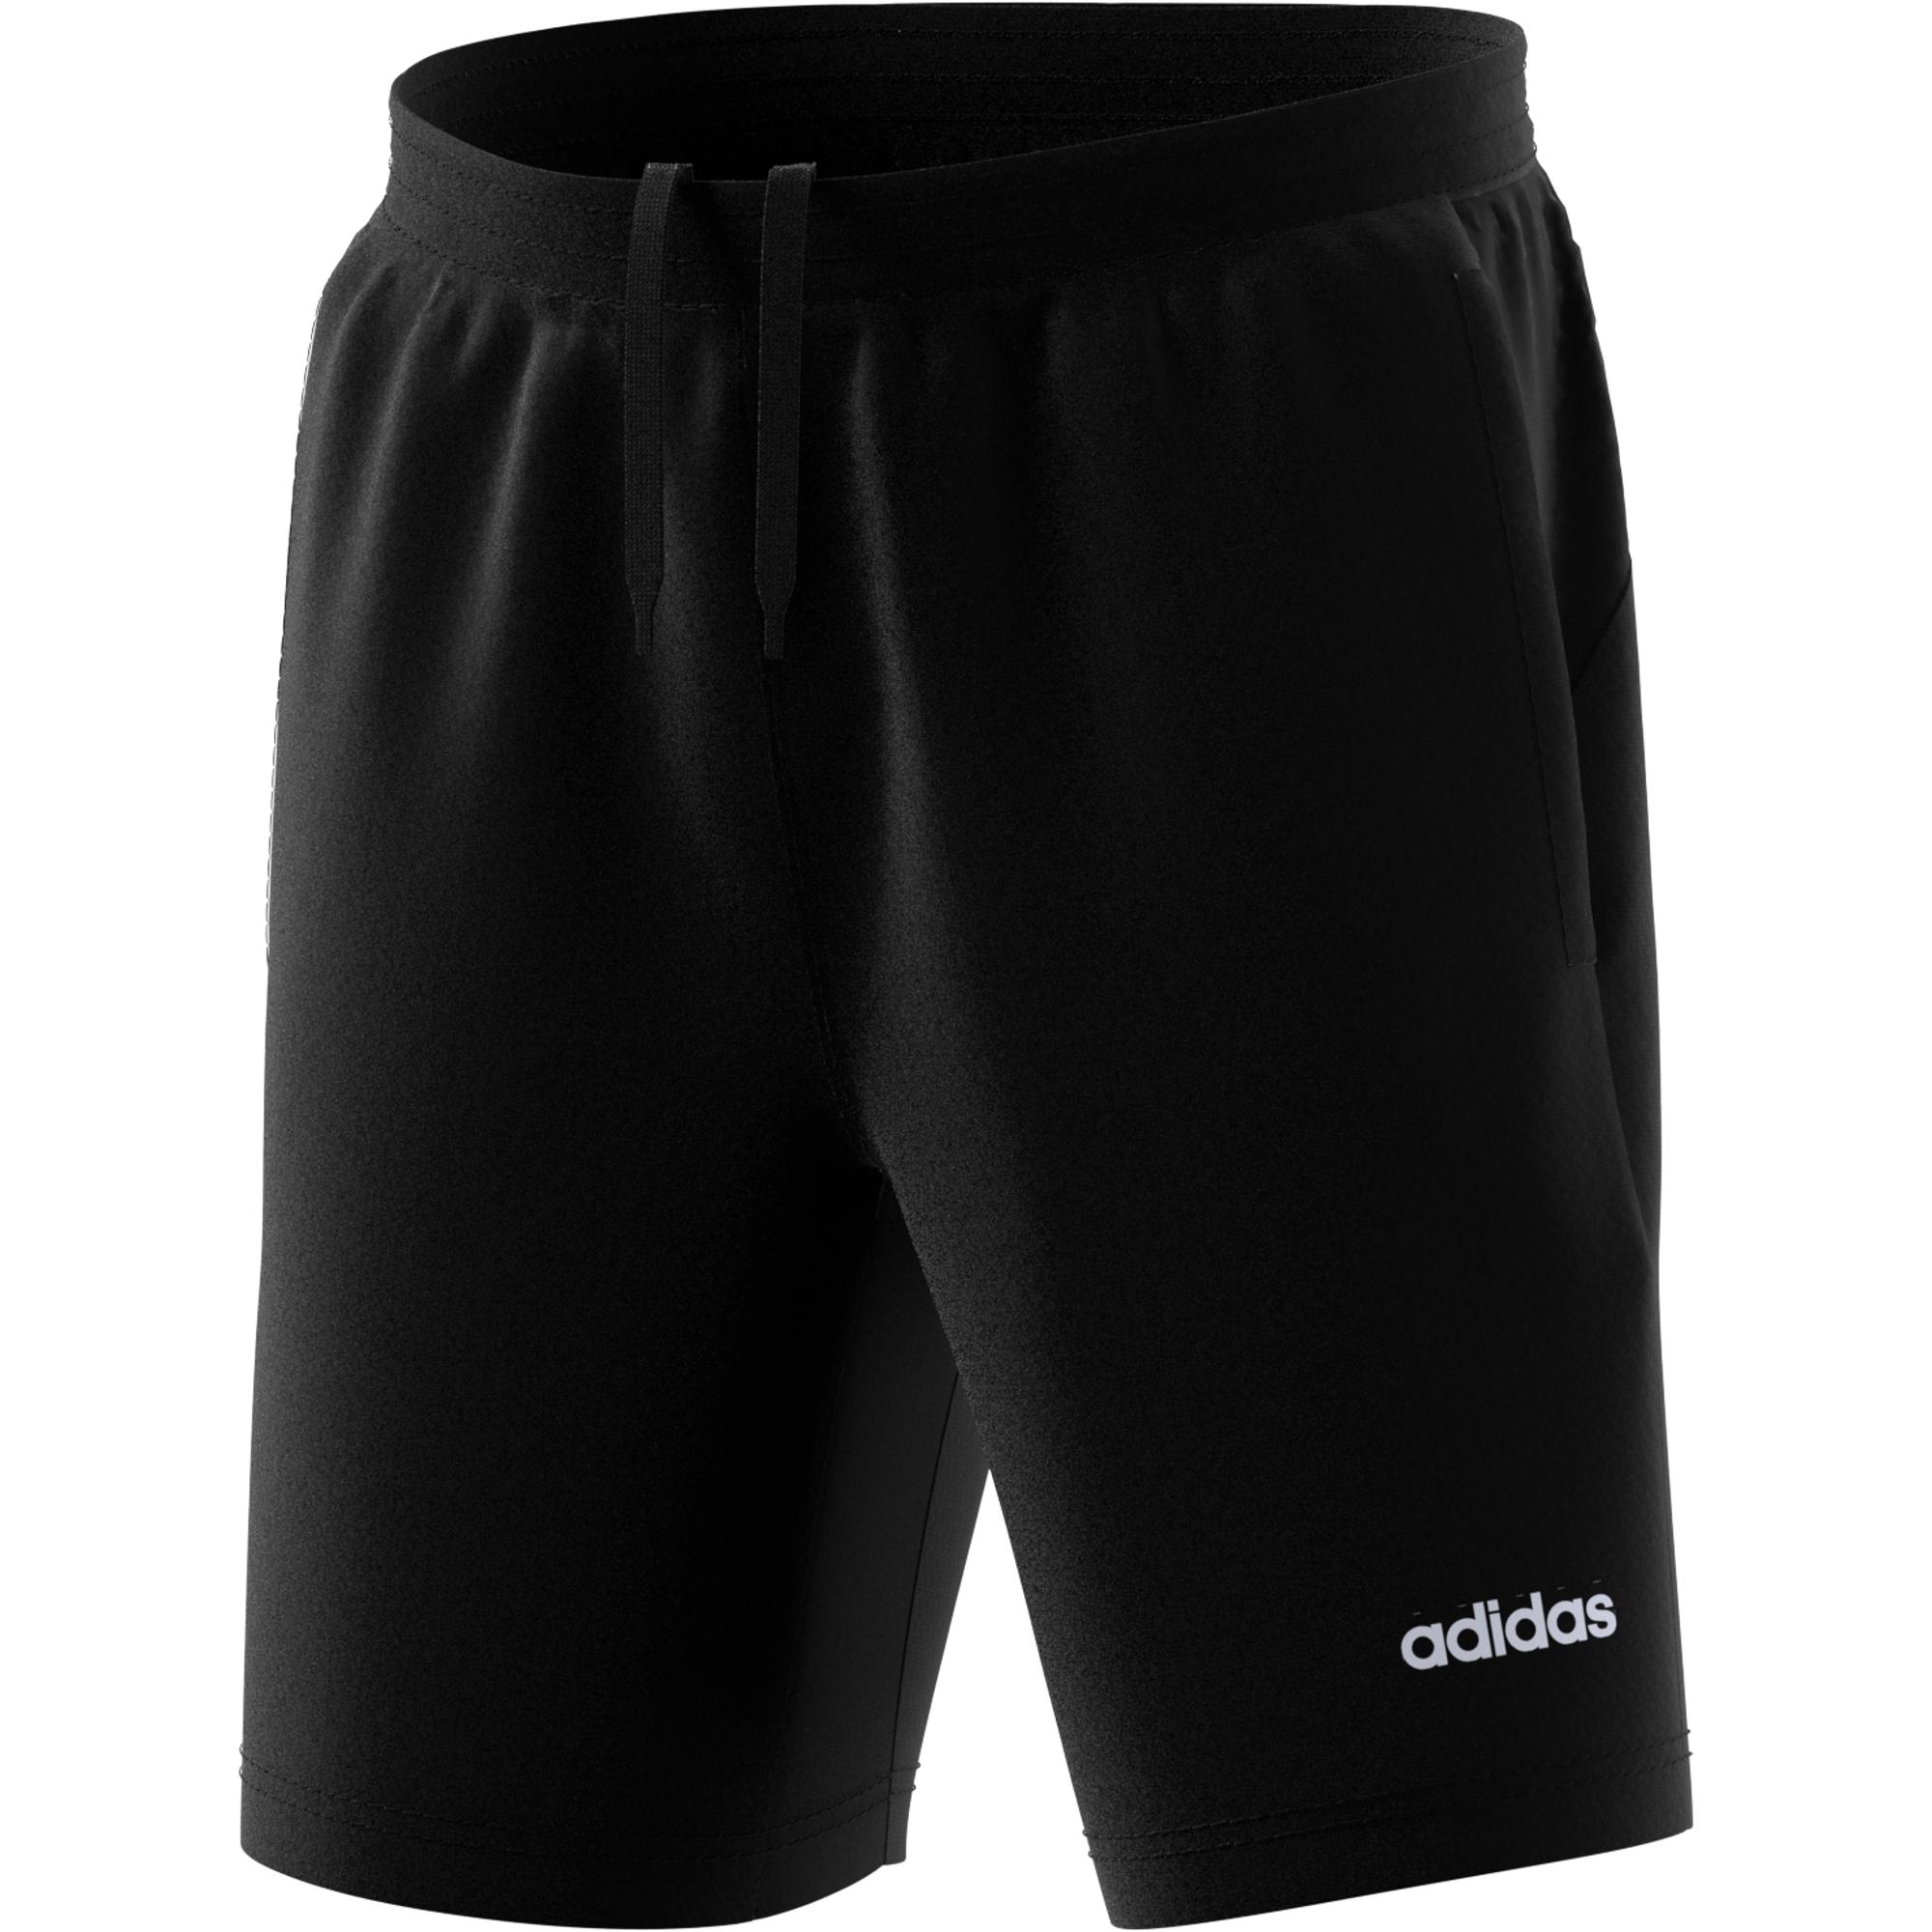 adidas climacool shorts uk